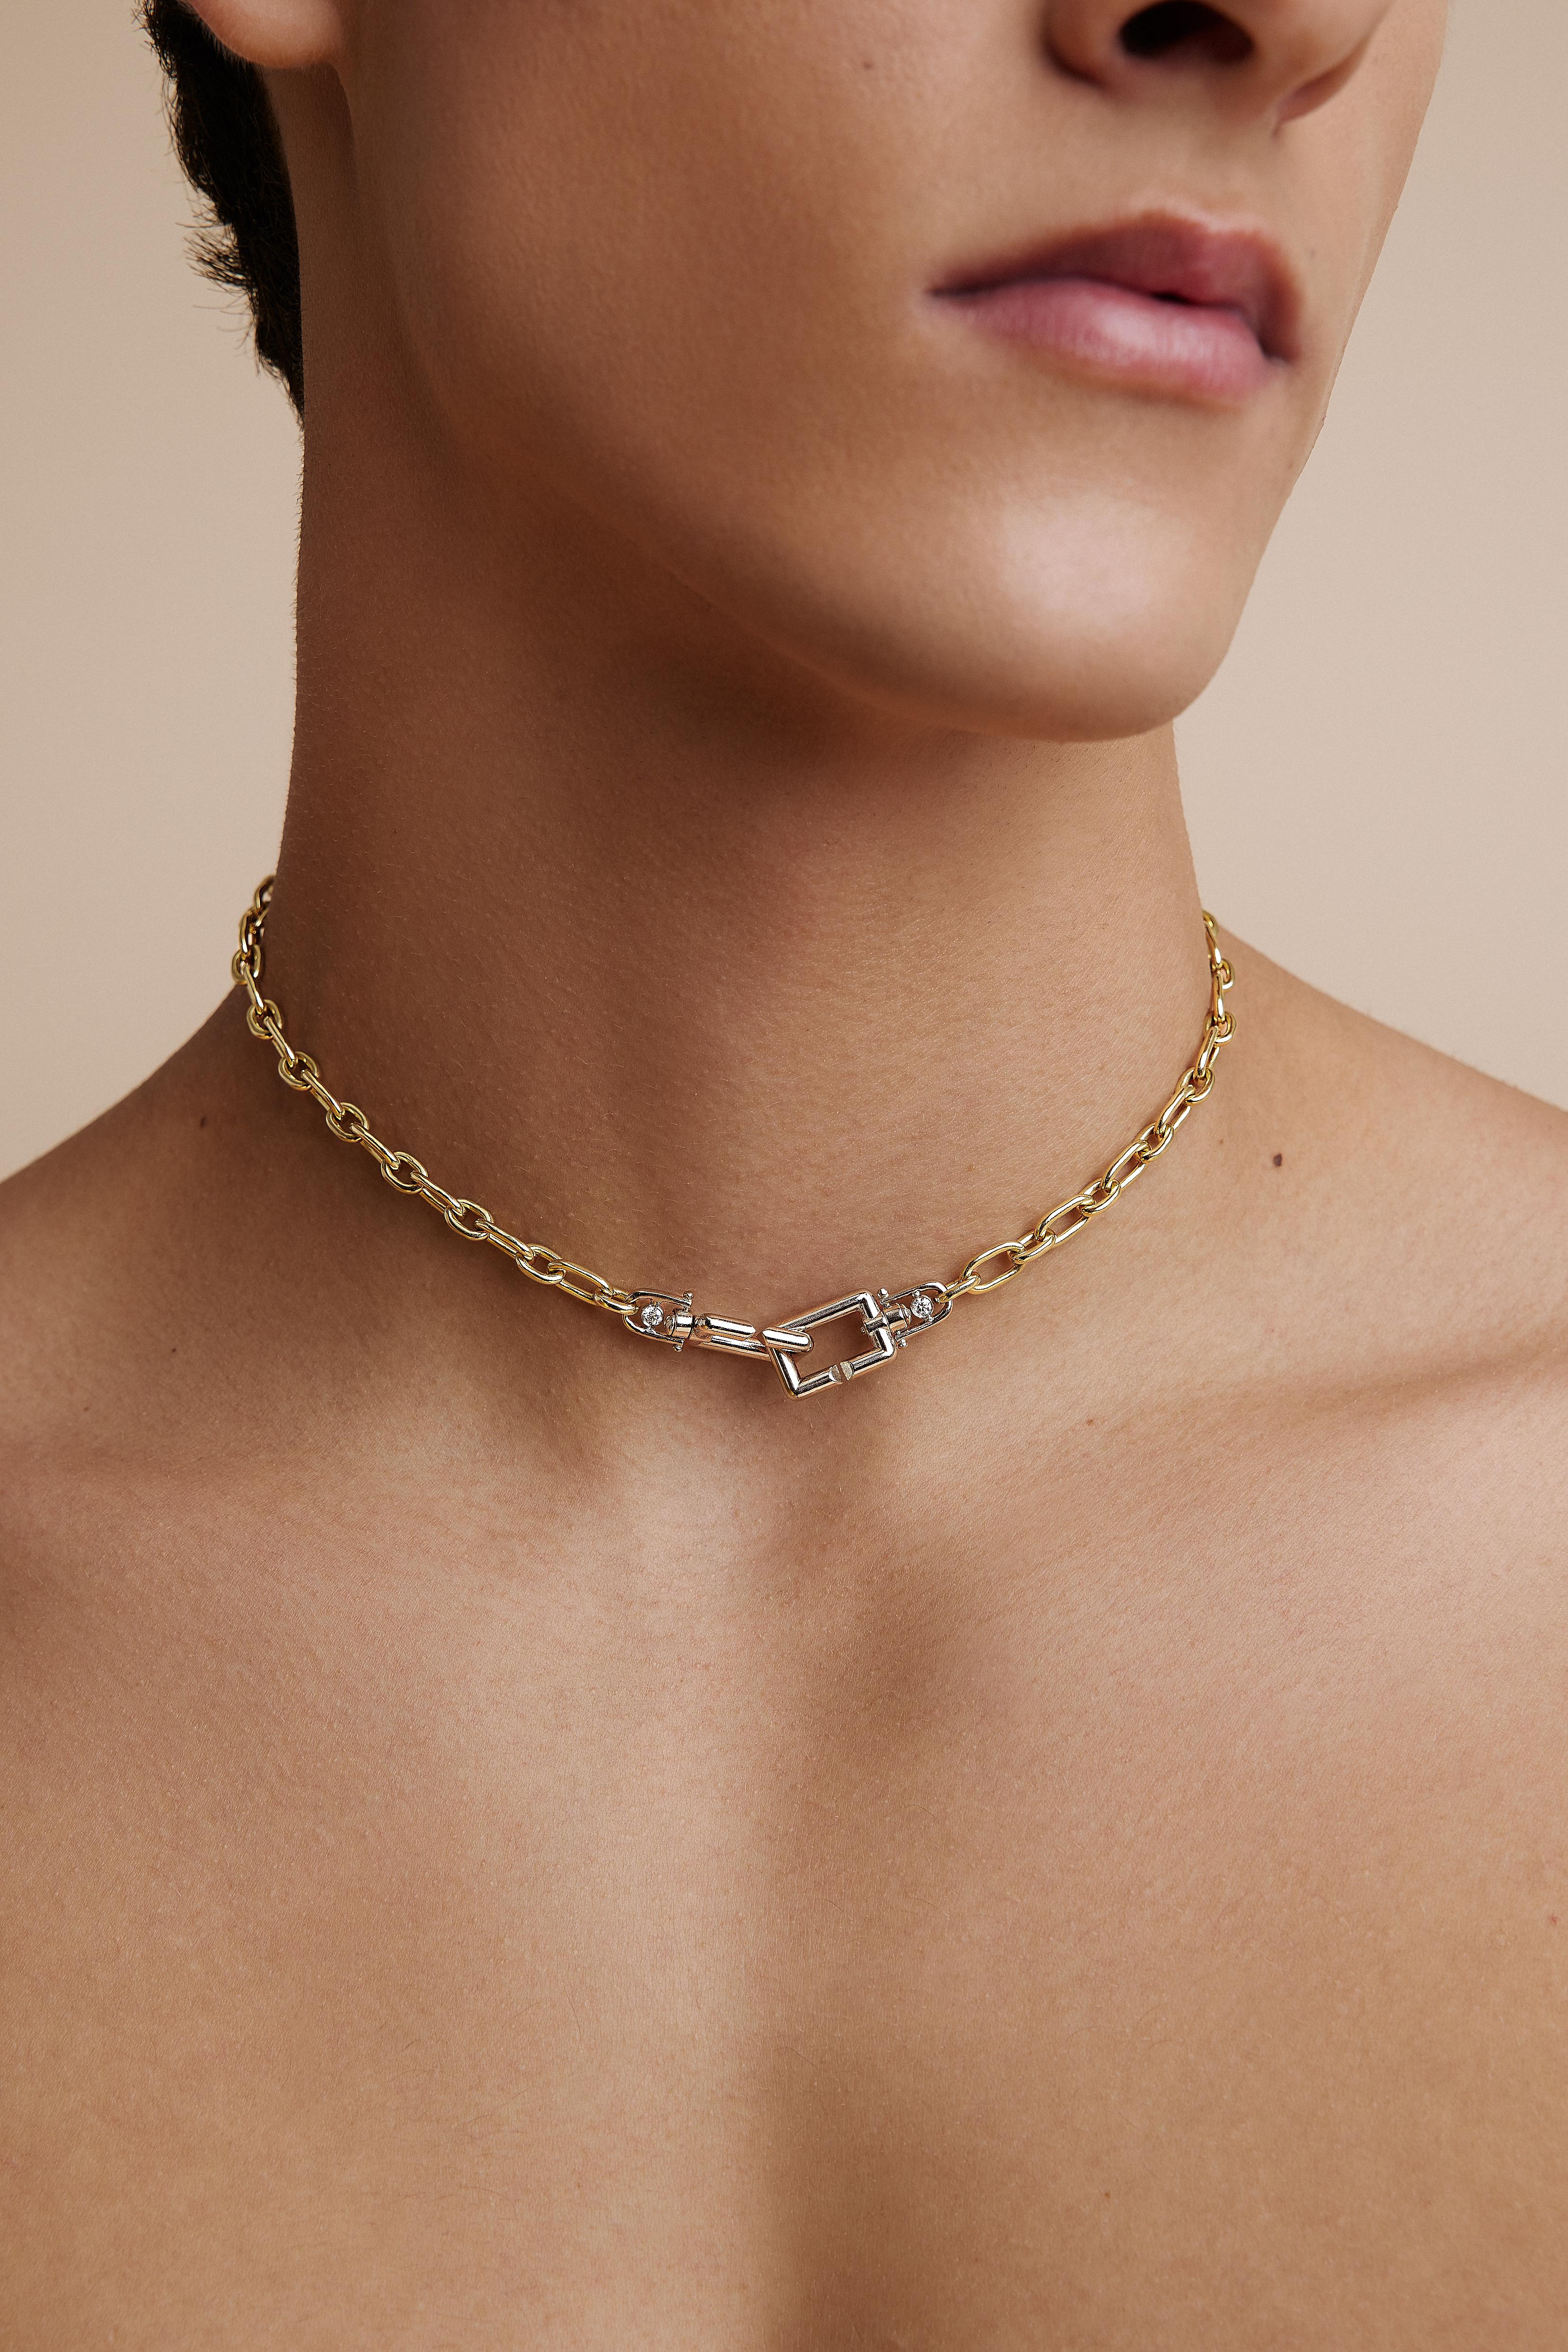 Découvrez la fusion parfaite de la fonctionnalité et de l'art avec notre collier en or 18 carats duotone, véritable témoignage de sophistication et d'élégance intemporelle. Permettez-nous de vous présenter notre collier de diamants Bold Lynx, où